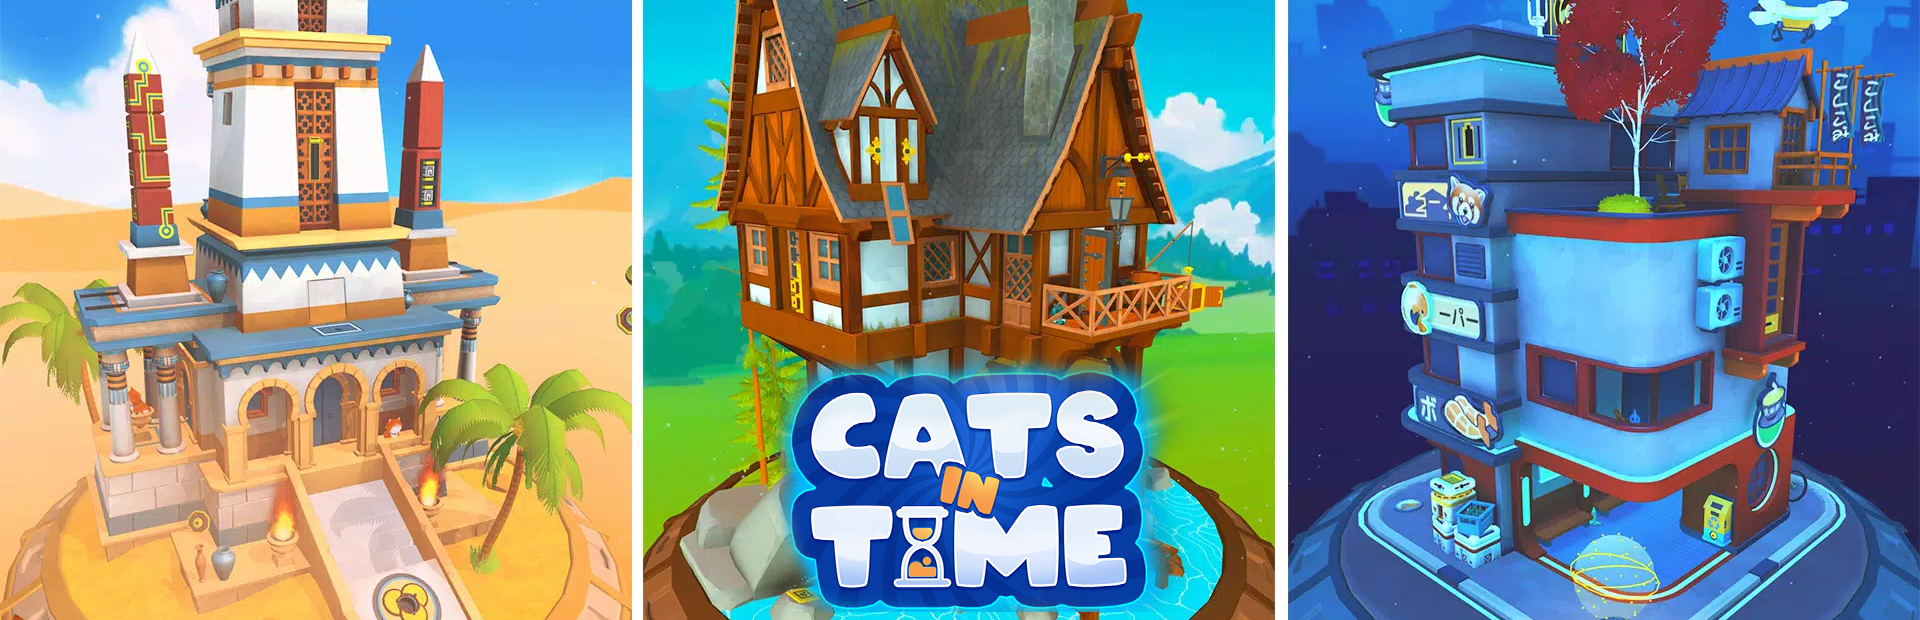 دانلود بازی Cats in Time برای پی سی | گیمباتو